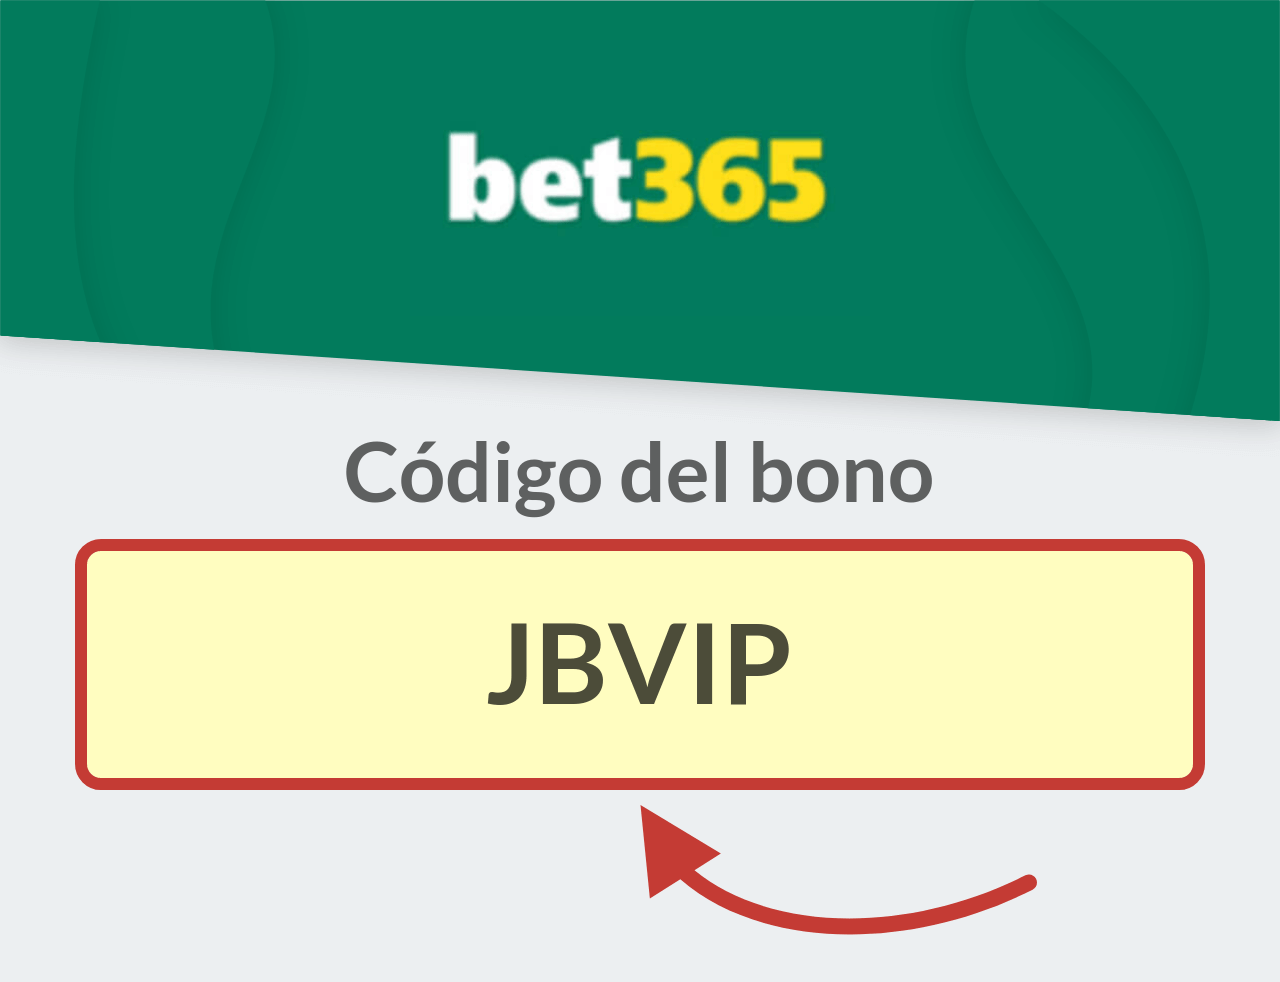 Código del Bono bet365 Bolivia